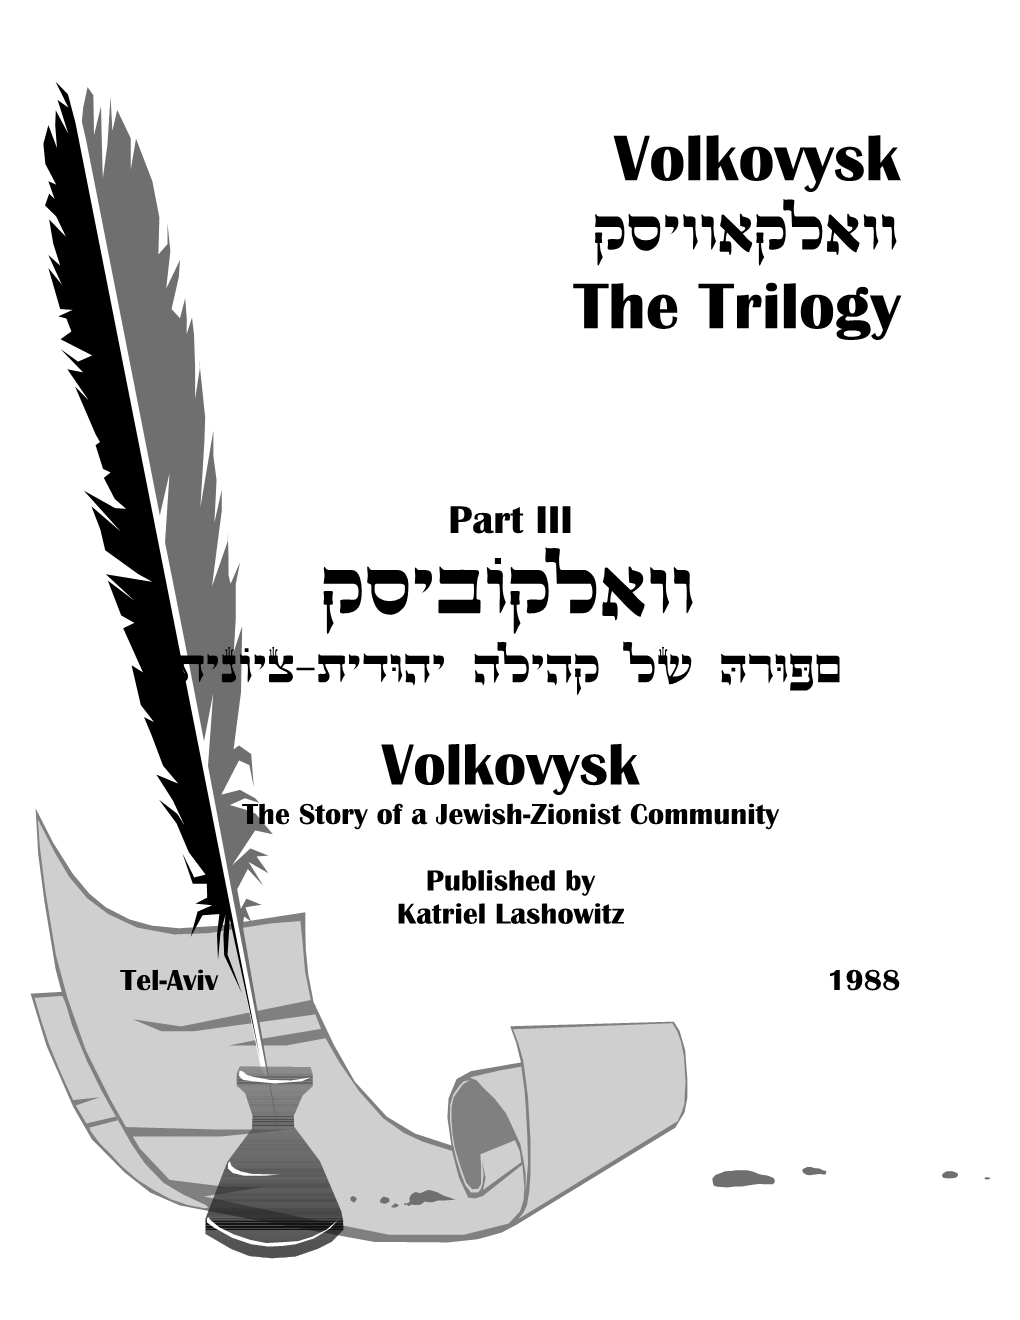 Volkovysk Exhuutektuu the Trilogy